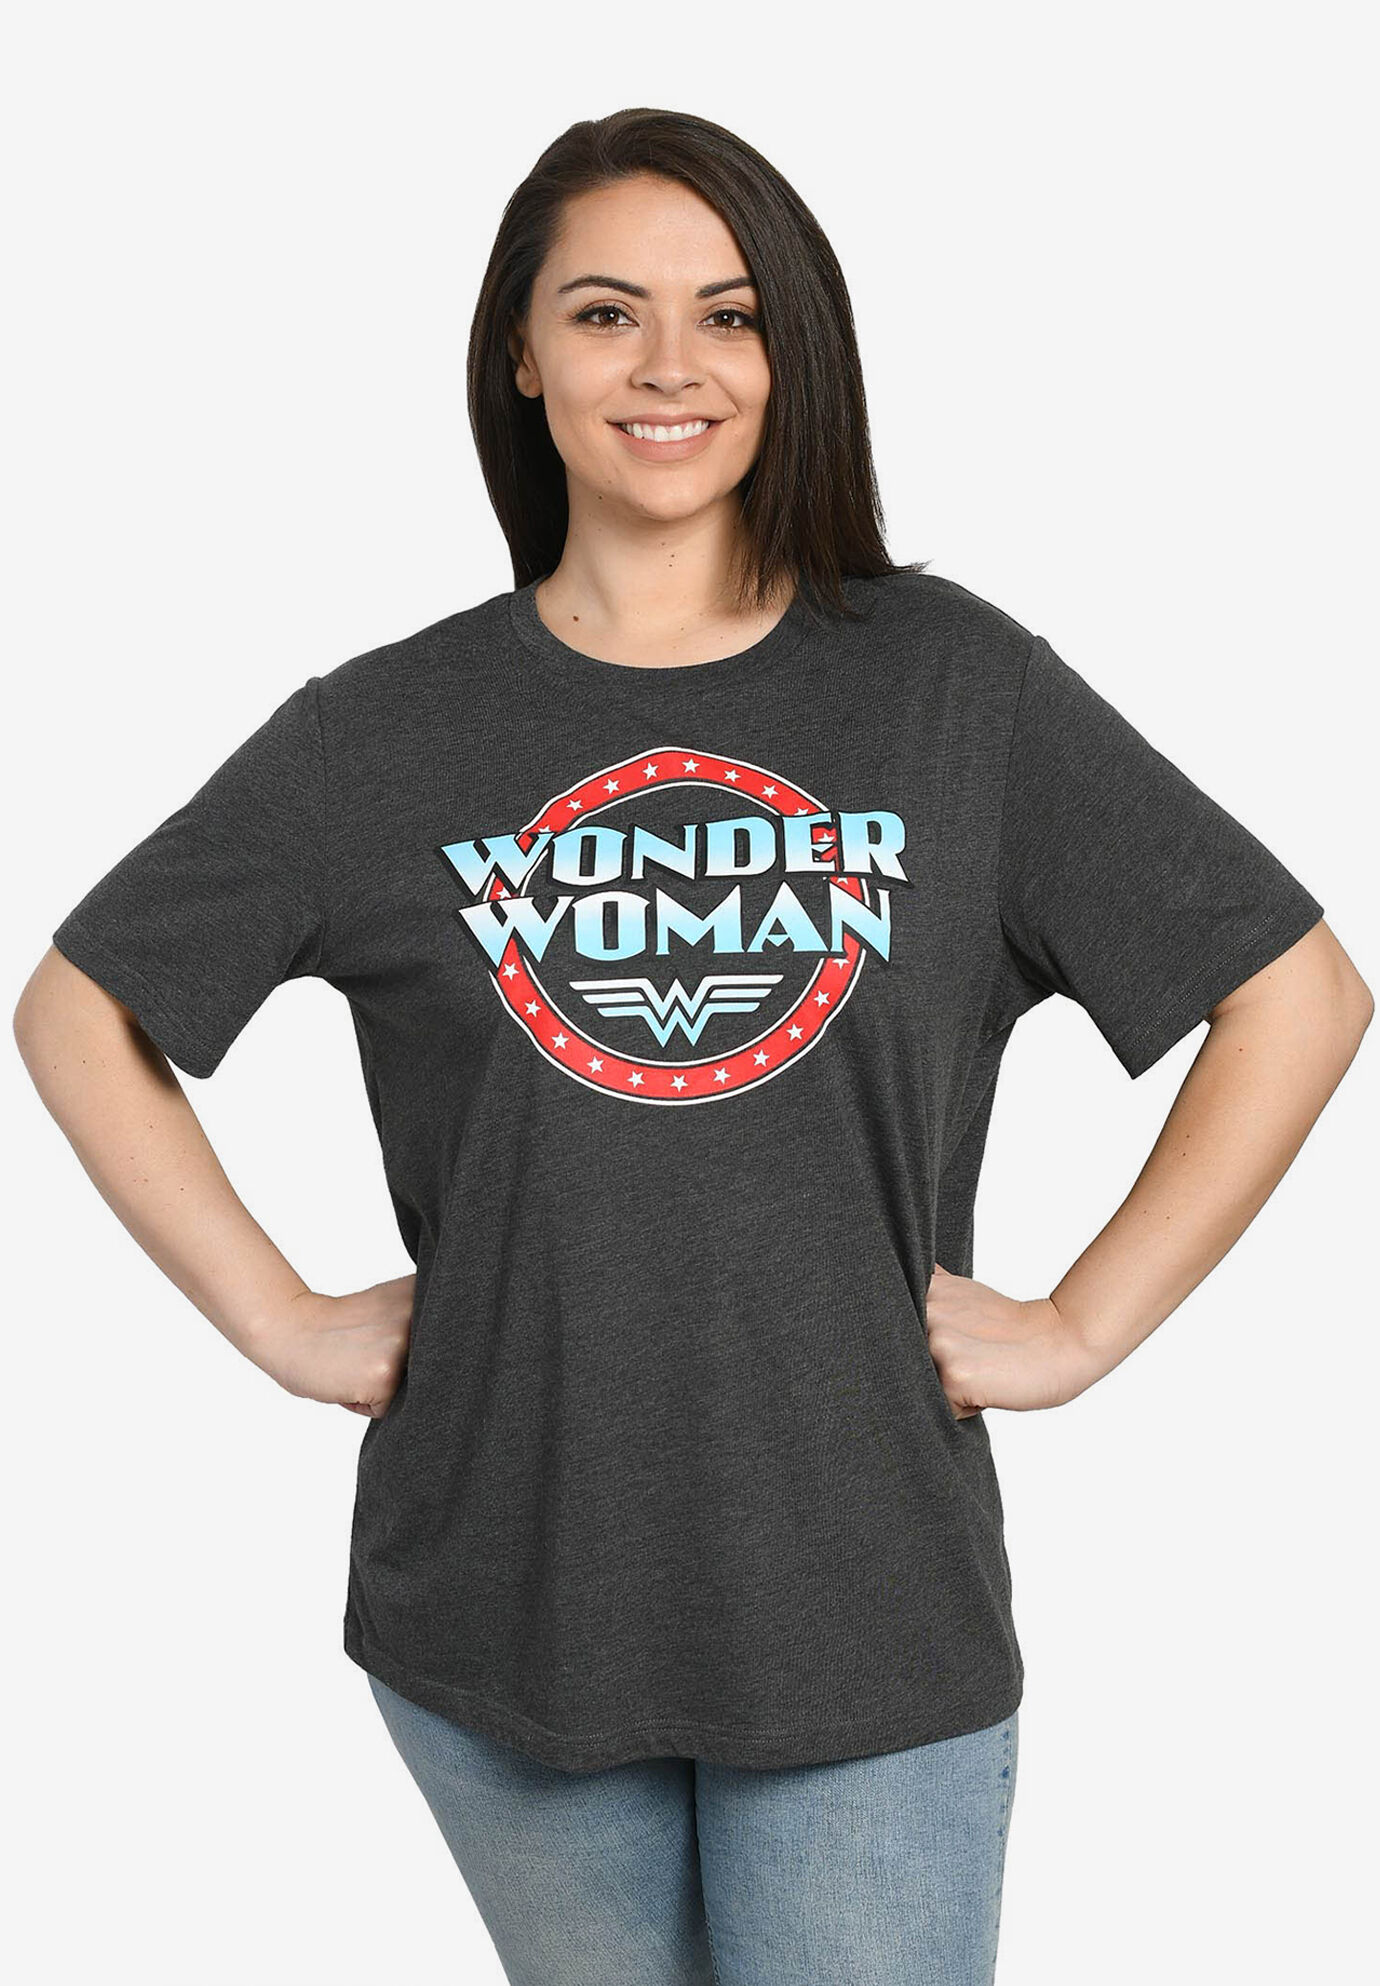 Plus Size Women's DC Comics Wonder Woman T-Shirt by DC Comics in Gray (Size 1X (14-16))